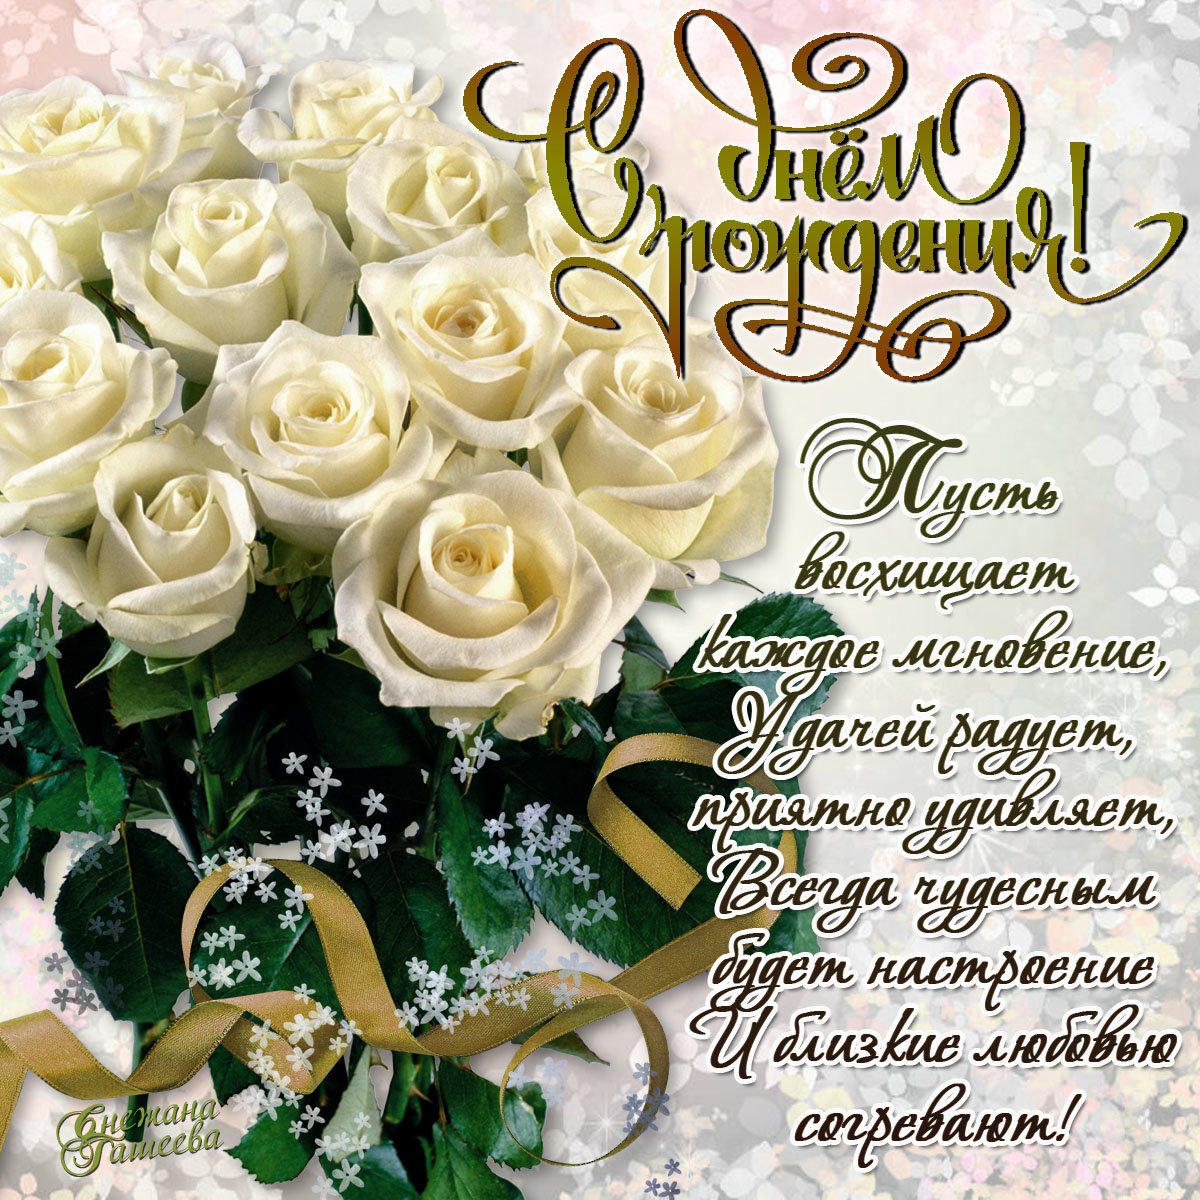 Трогательные поздравления с днем рождения до слез в прозе kinotv